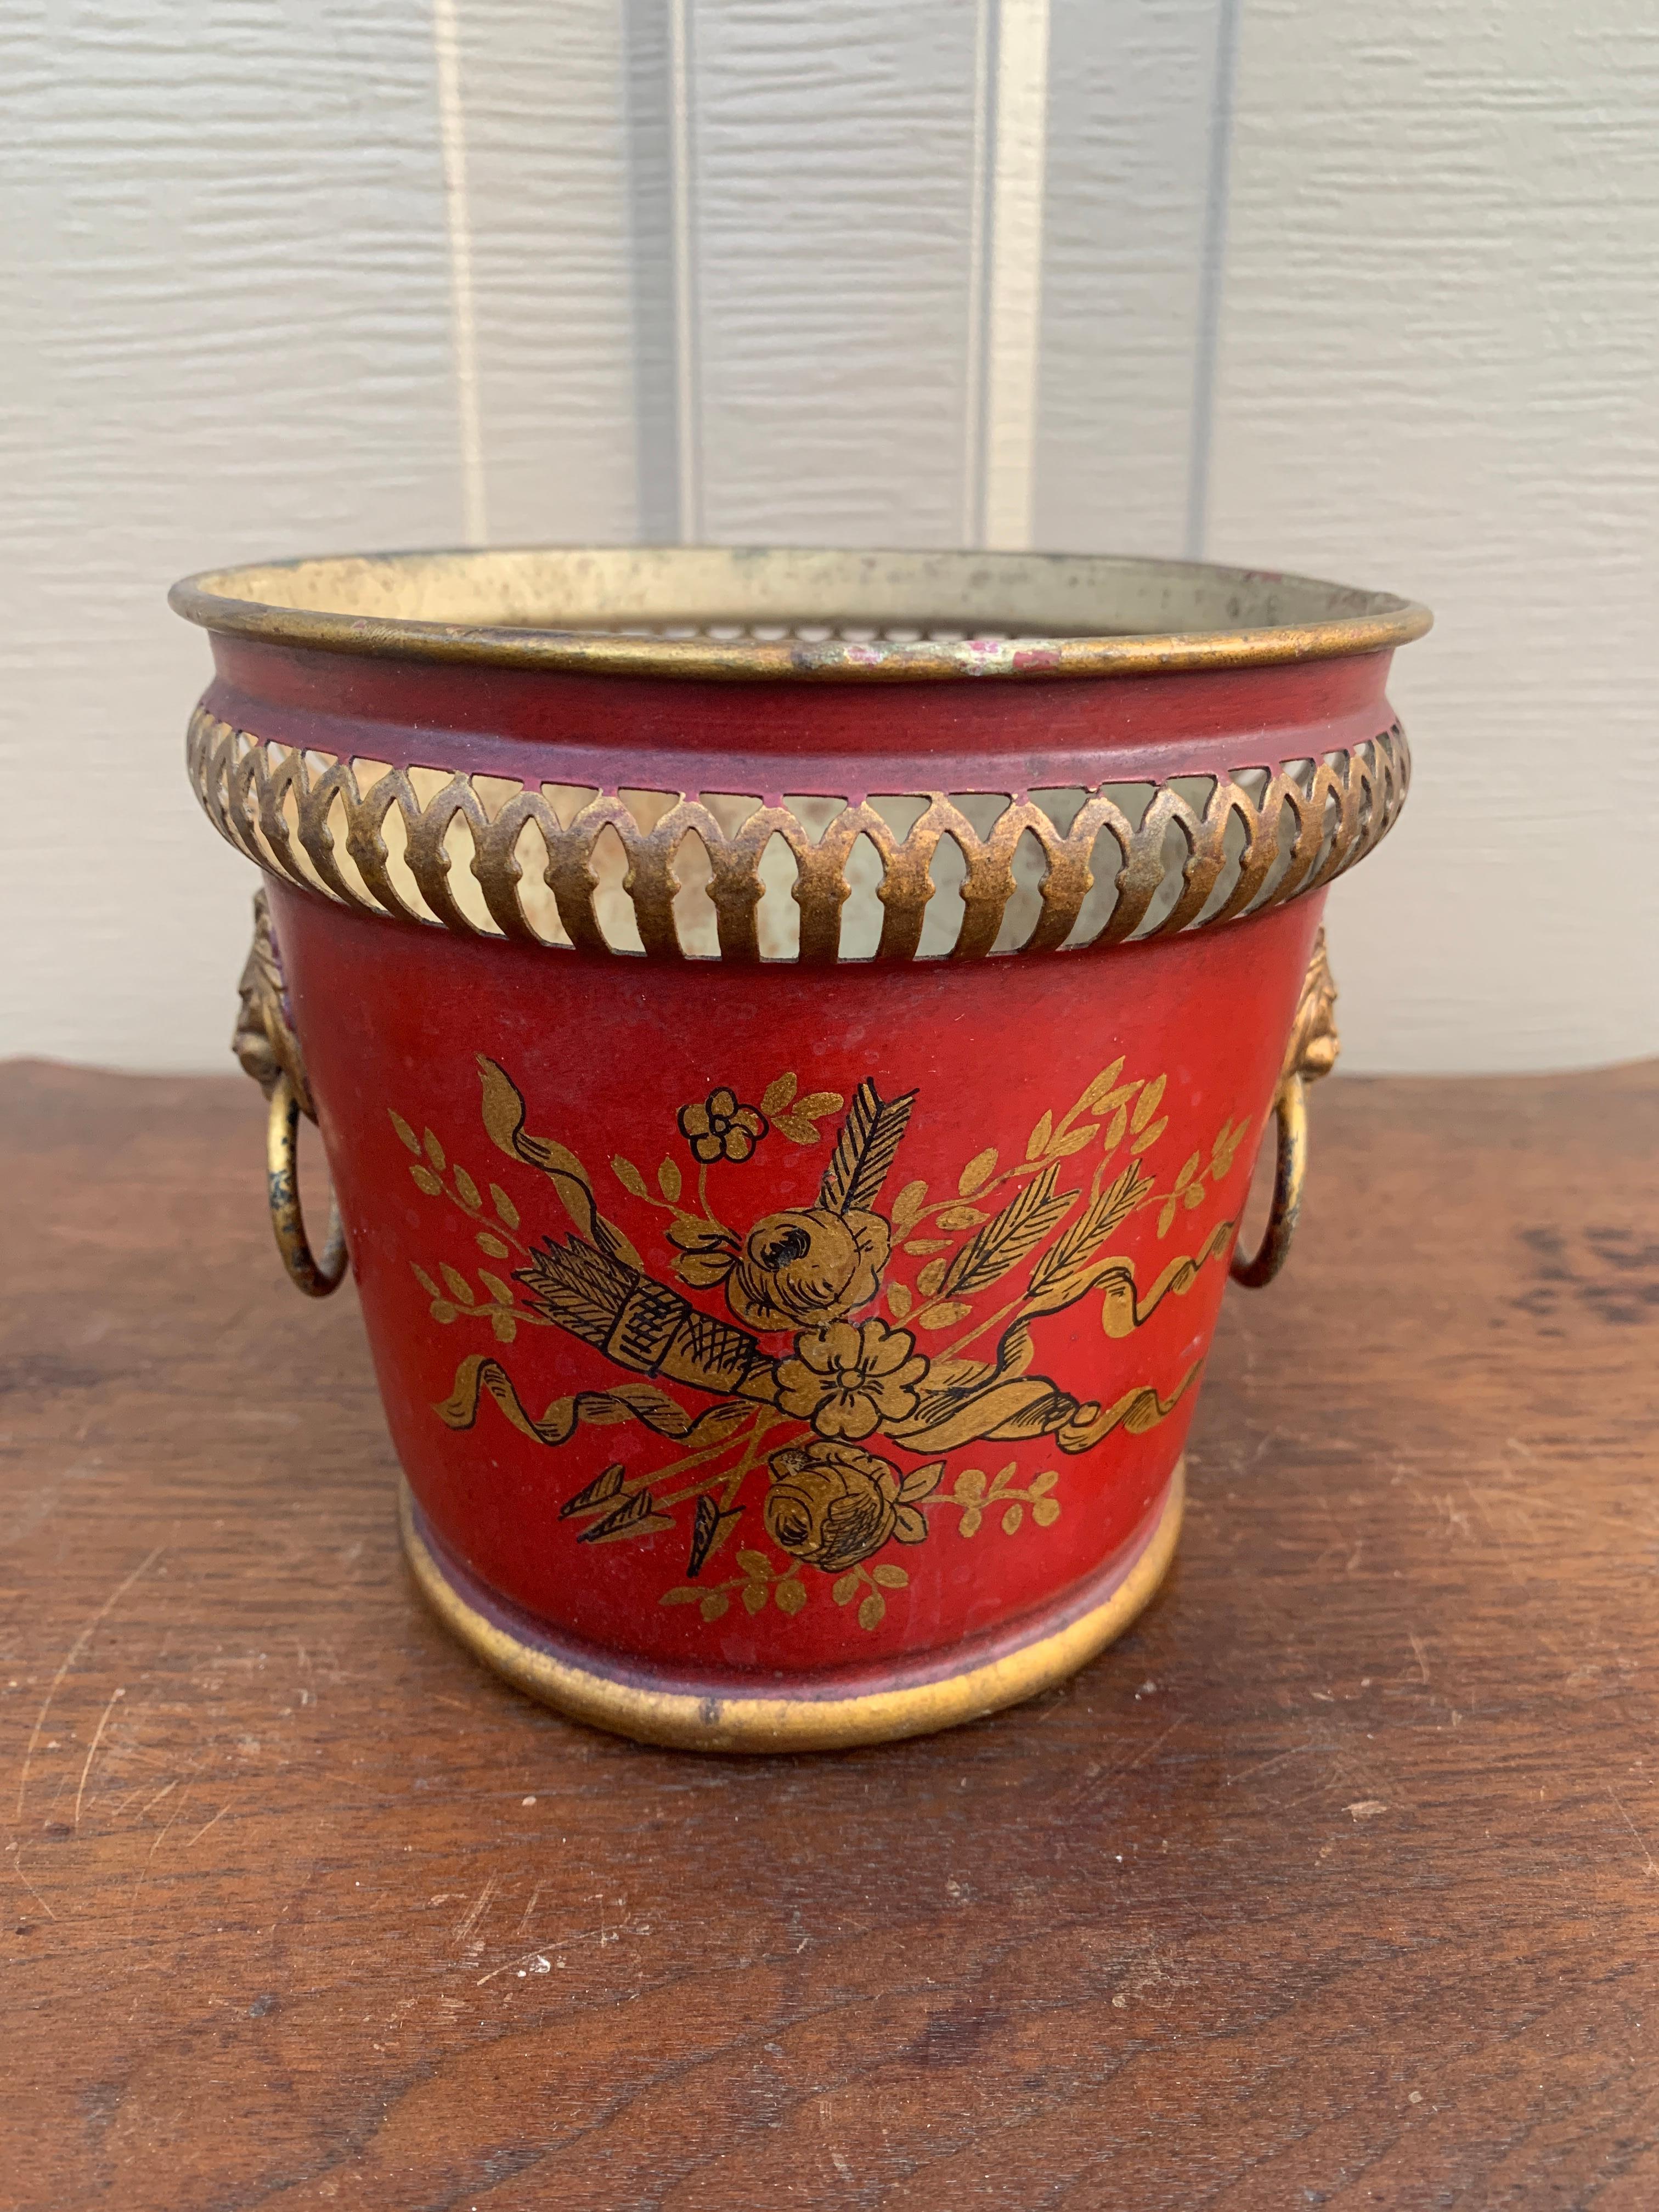 Magnifique cache-pot, jardinière ou vase néoclassique en tole rouge et or

France, Circa Early 20th Century

Mesures : 6 